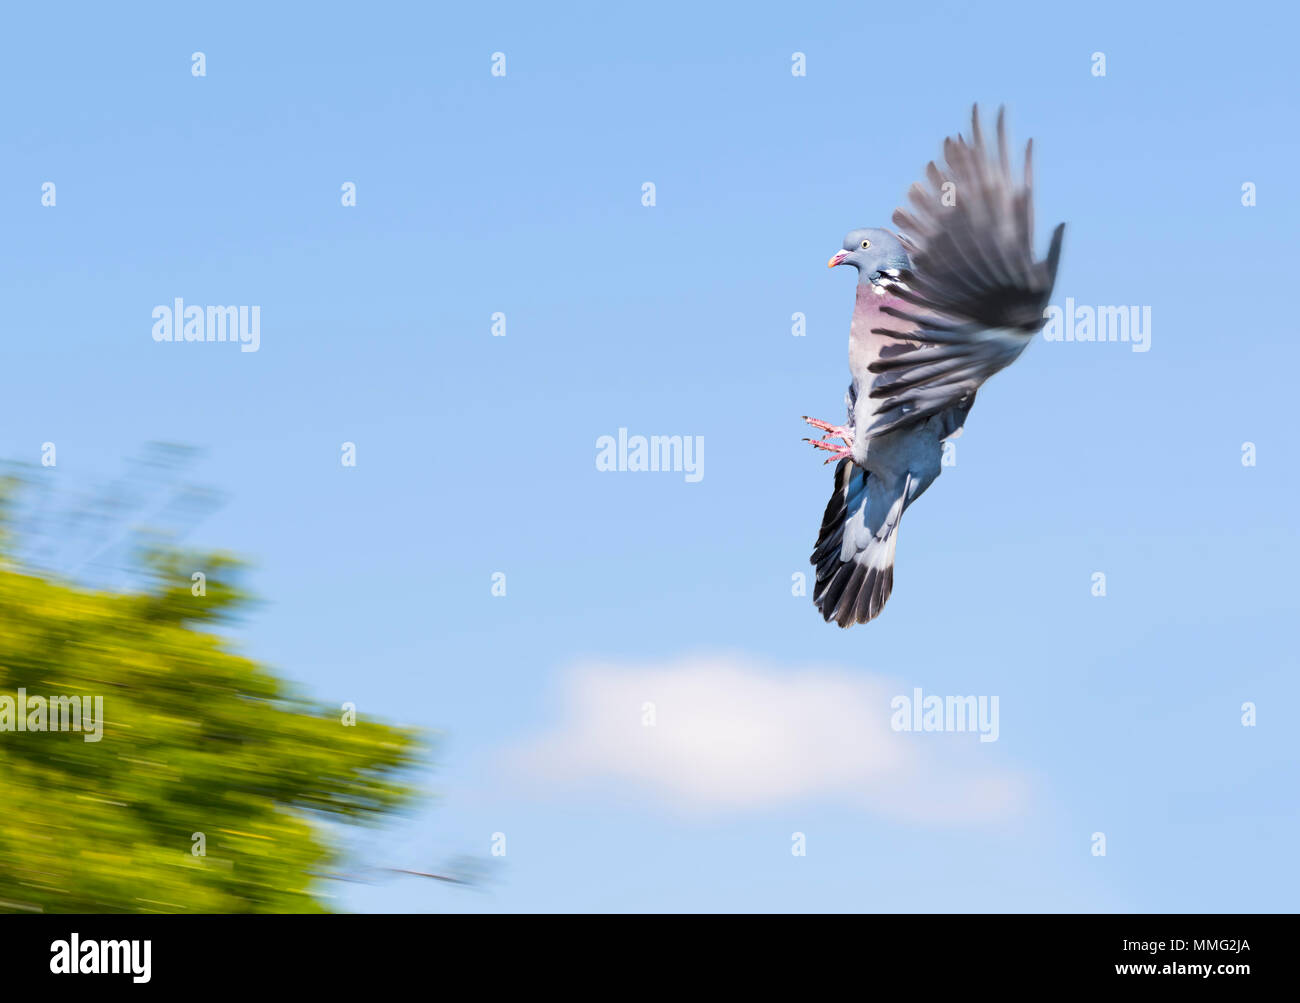 Holztaube (Columba palumbus) mit in der Luft gefrorenen Flügeln gegen blauen Himmel und auf einem Baum an Land kommen, in Großbritannien. Fliegende Taube. Stockfoto